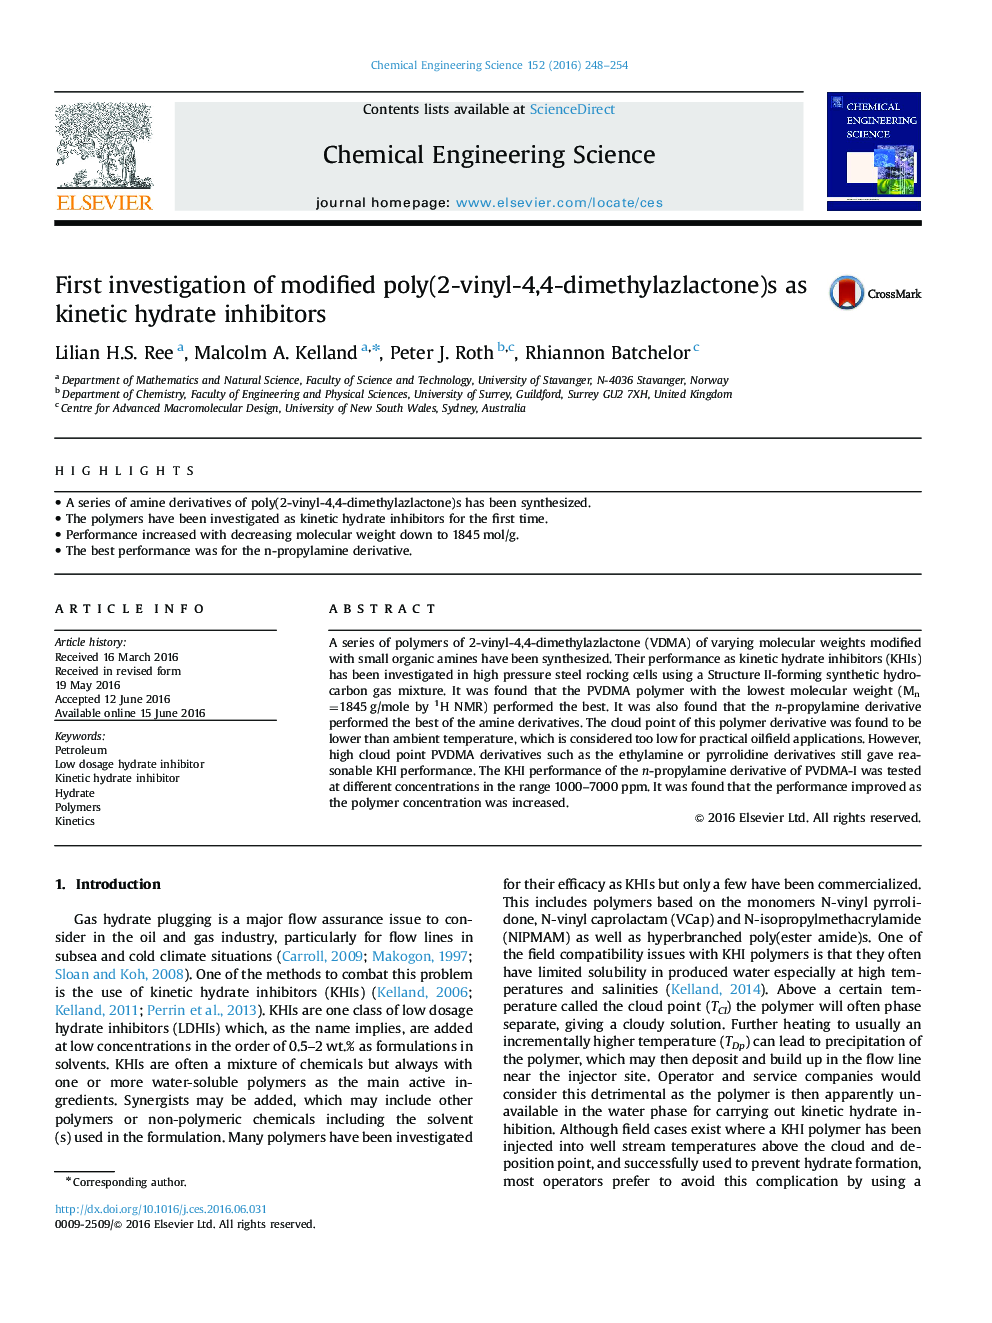 اولین تحقیق در مورد پلی وینیل-4،4-دی متیلازلاکتون اصلاح شده به عنوان مهار کننده های هیدرات سینتیک 